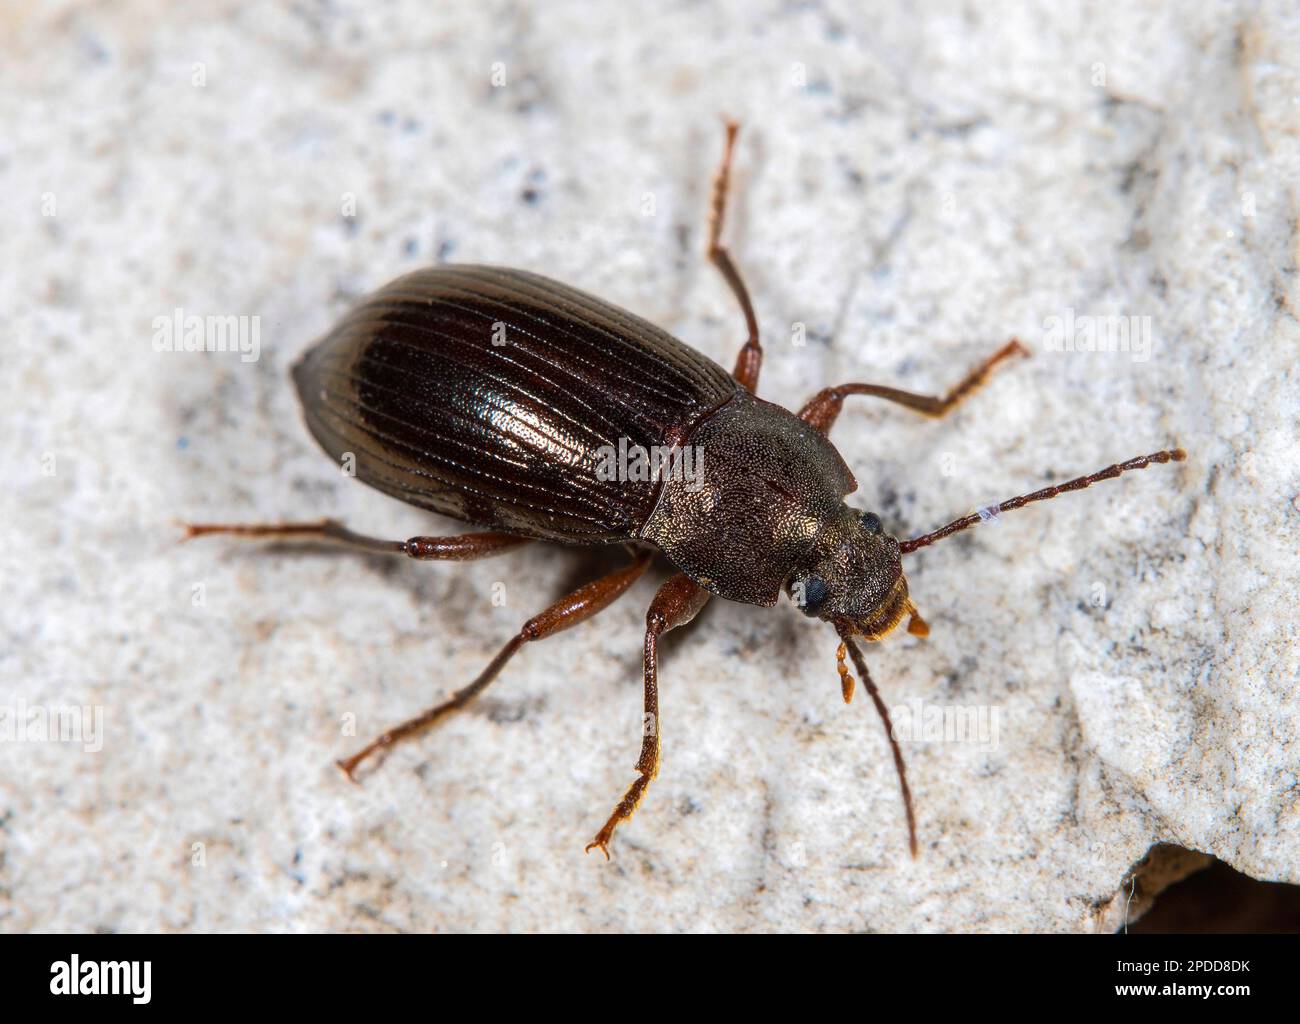 Darkling Beetle (Diaperis boleti), on a stone, dorsal view Stock Photo